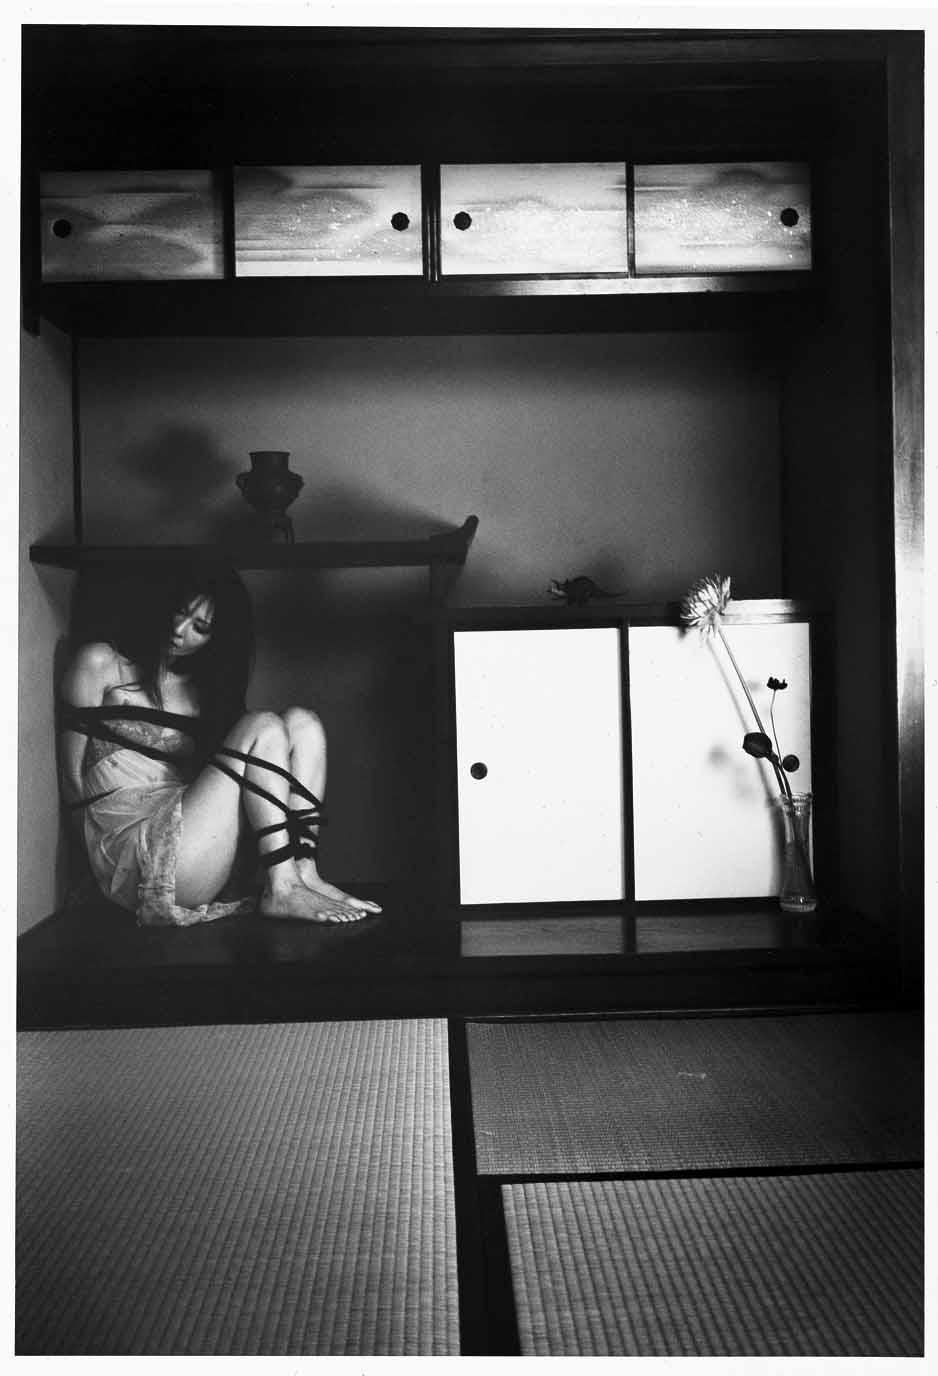 69YK #48 – Nobuyoshi Araki, Japanese Photography, Nude, Black and White, Art